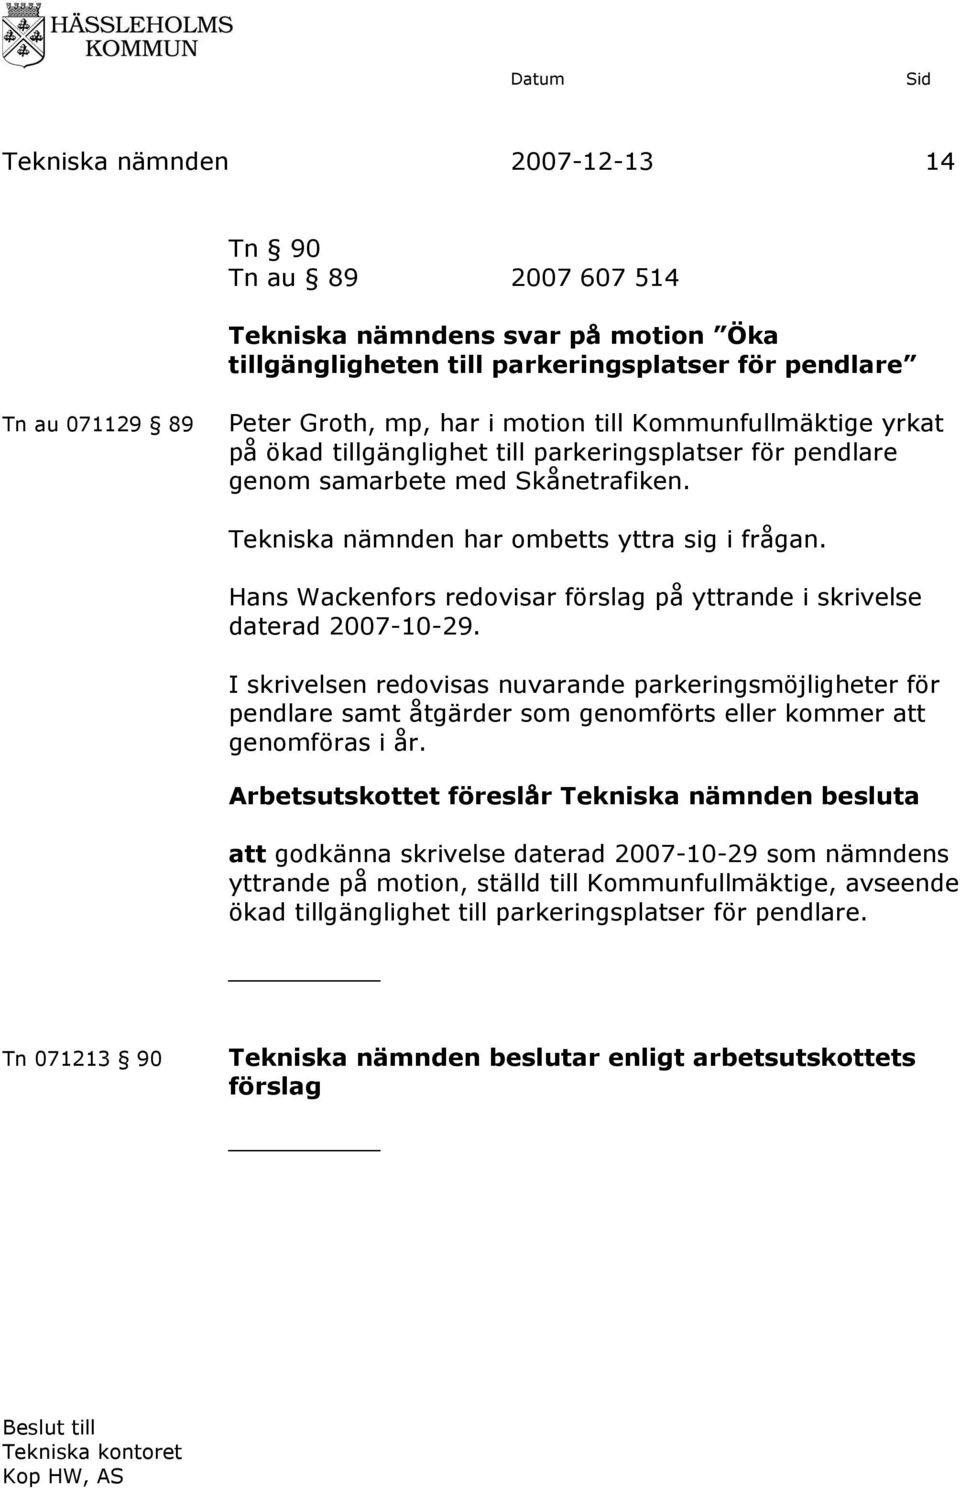 Hans Wackenfors redovisar förslag på yttrande i skrivelse daterad 2007-10-29.